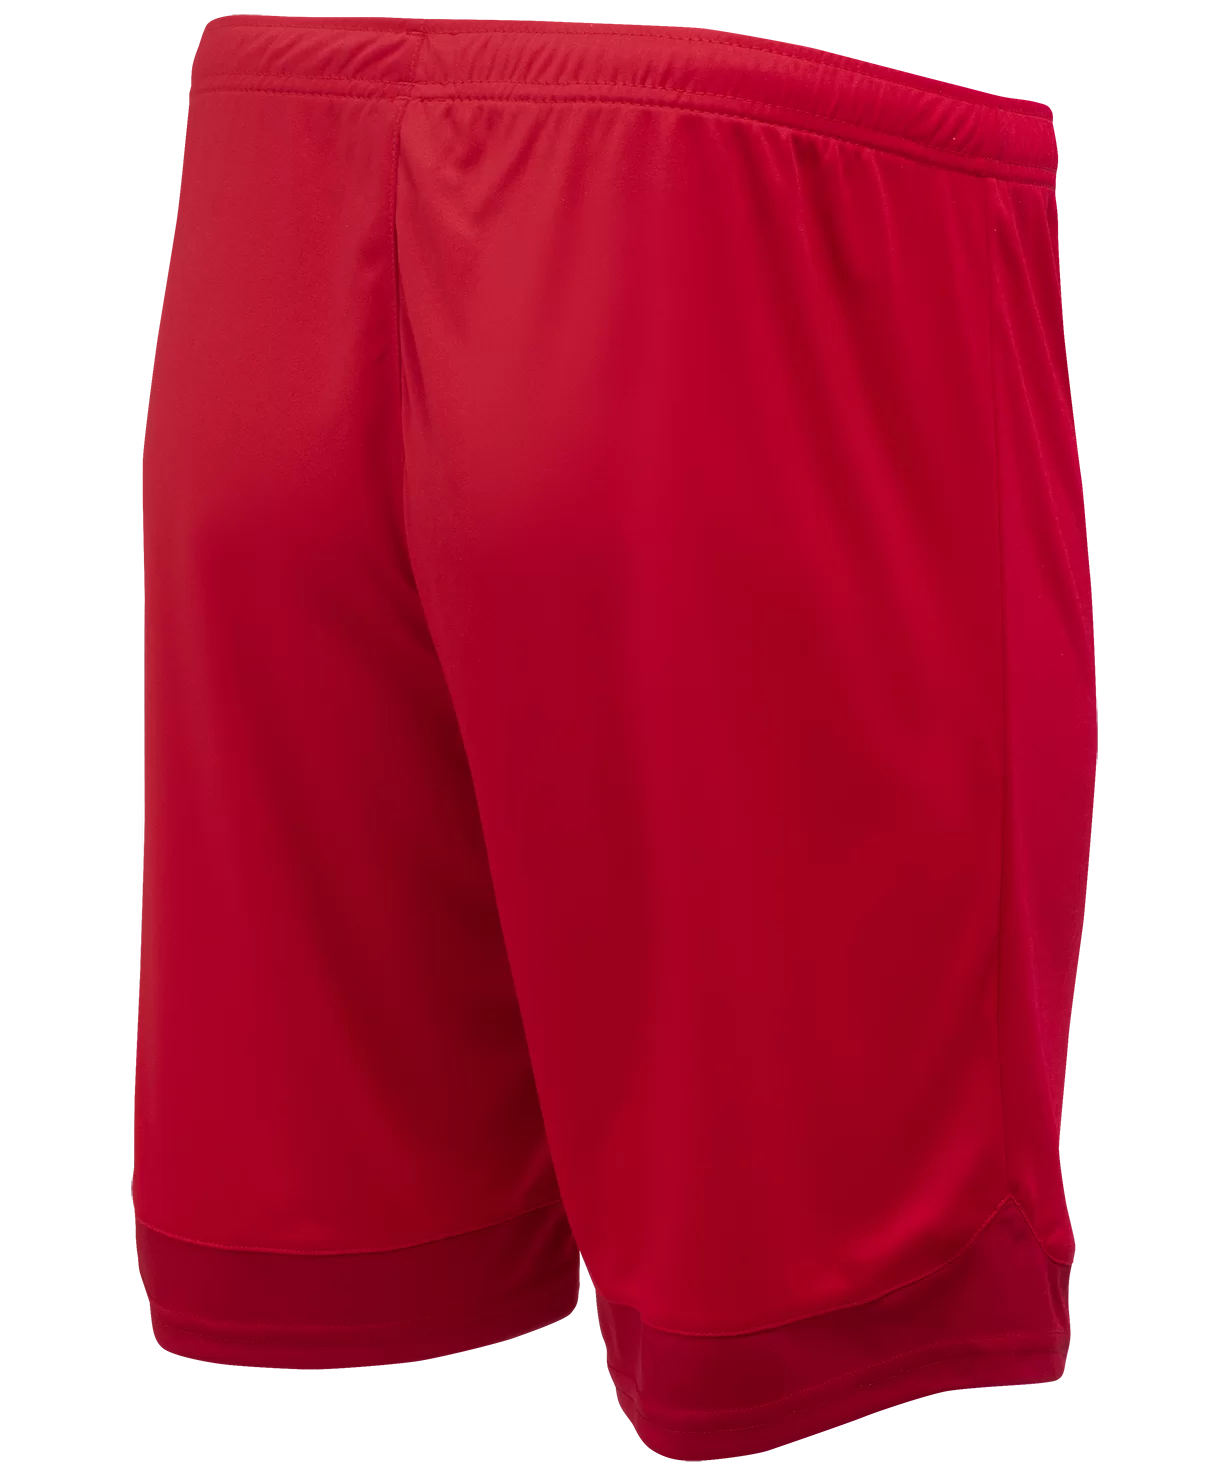 Фото Шорты игровые DIVISION PerFormDRY Union Shorts, красный/темно-красный/белый Jögel со склада магазина Спортев